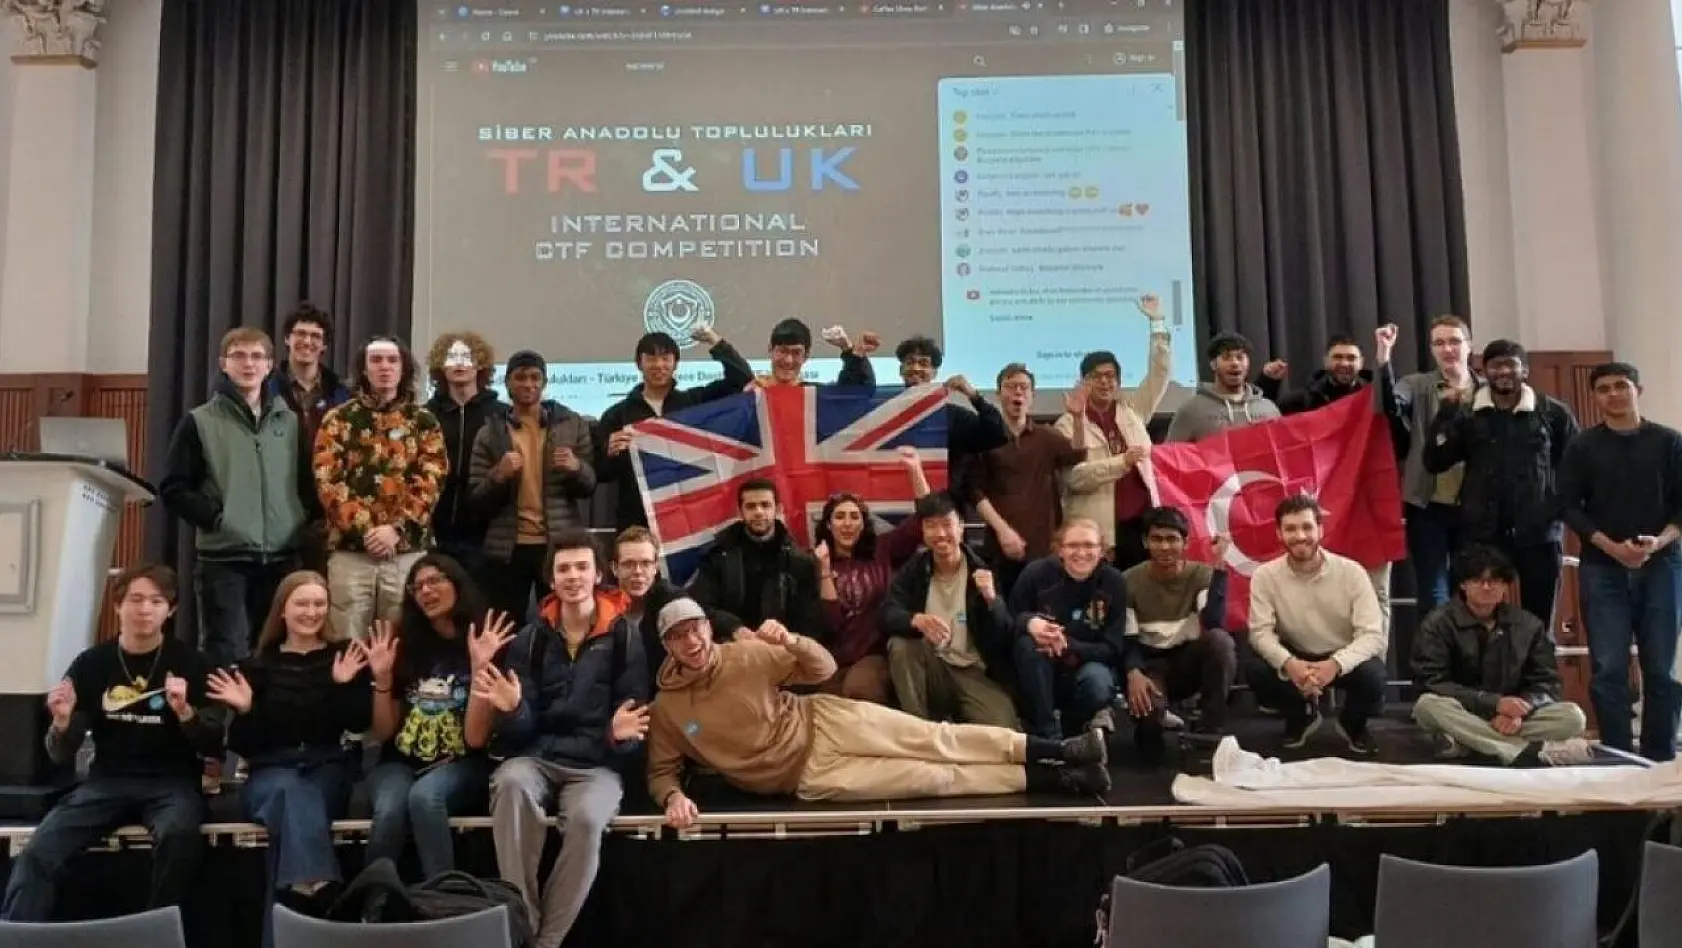 DPÜ öğrencilerinden TR&UK Uluslararası CTF Yarışması'nda tarihi başarı